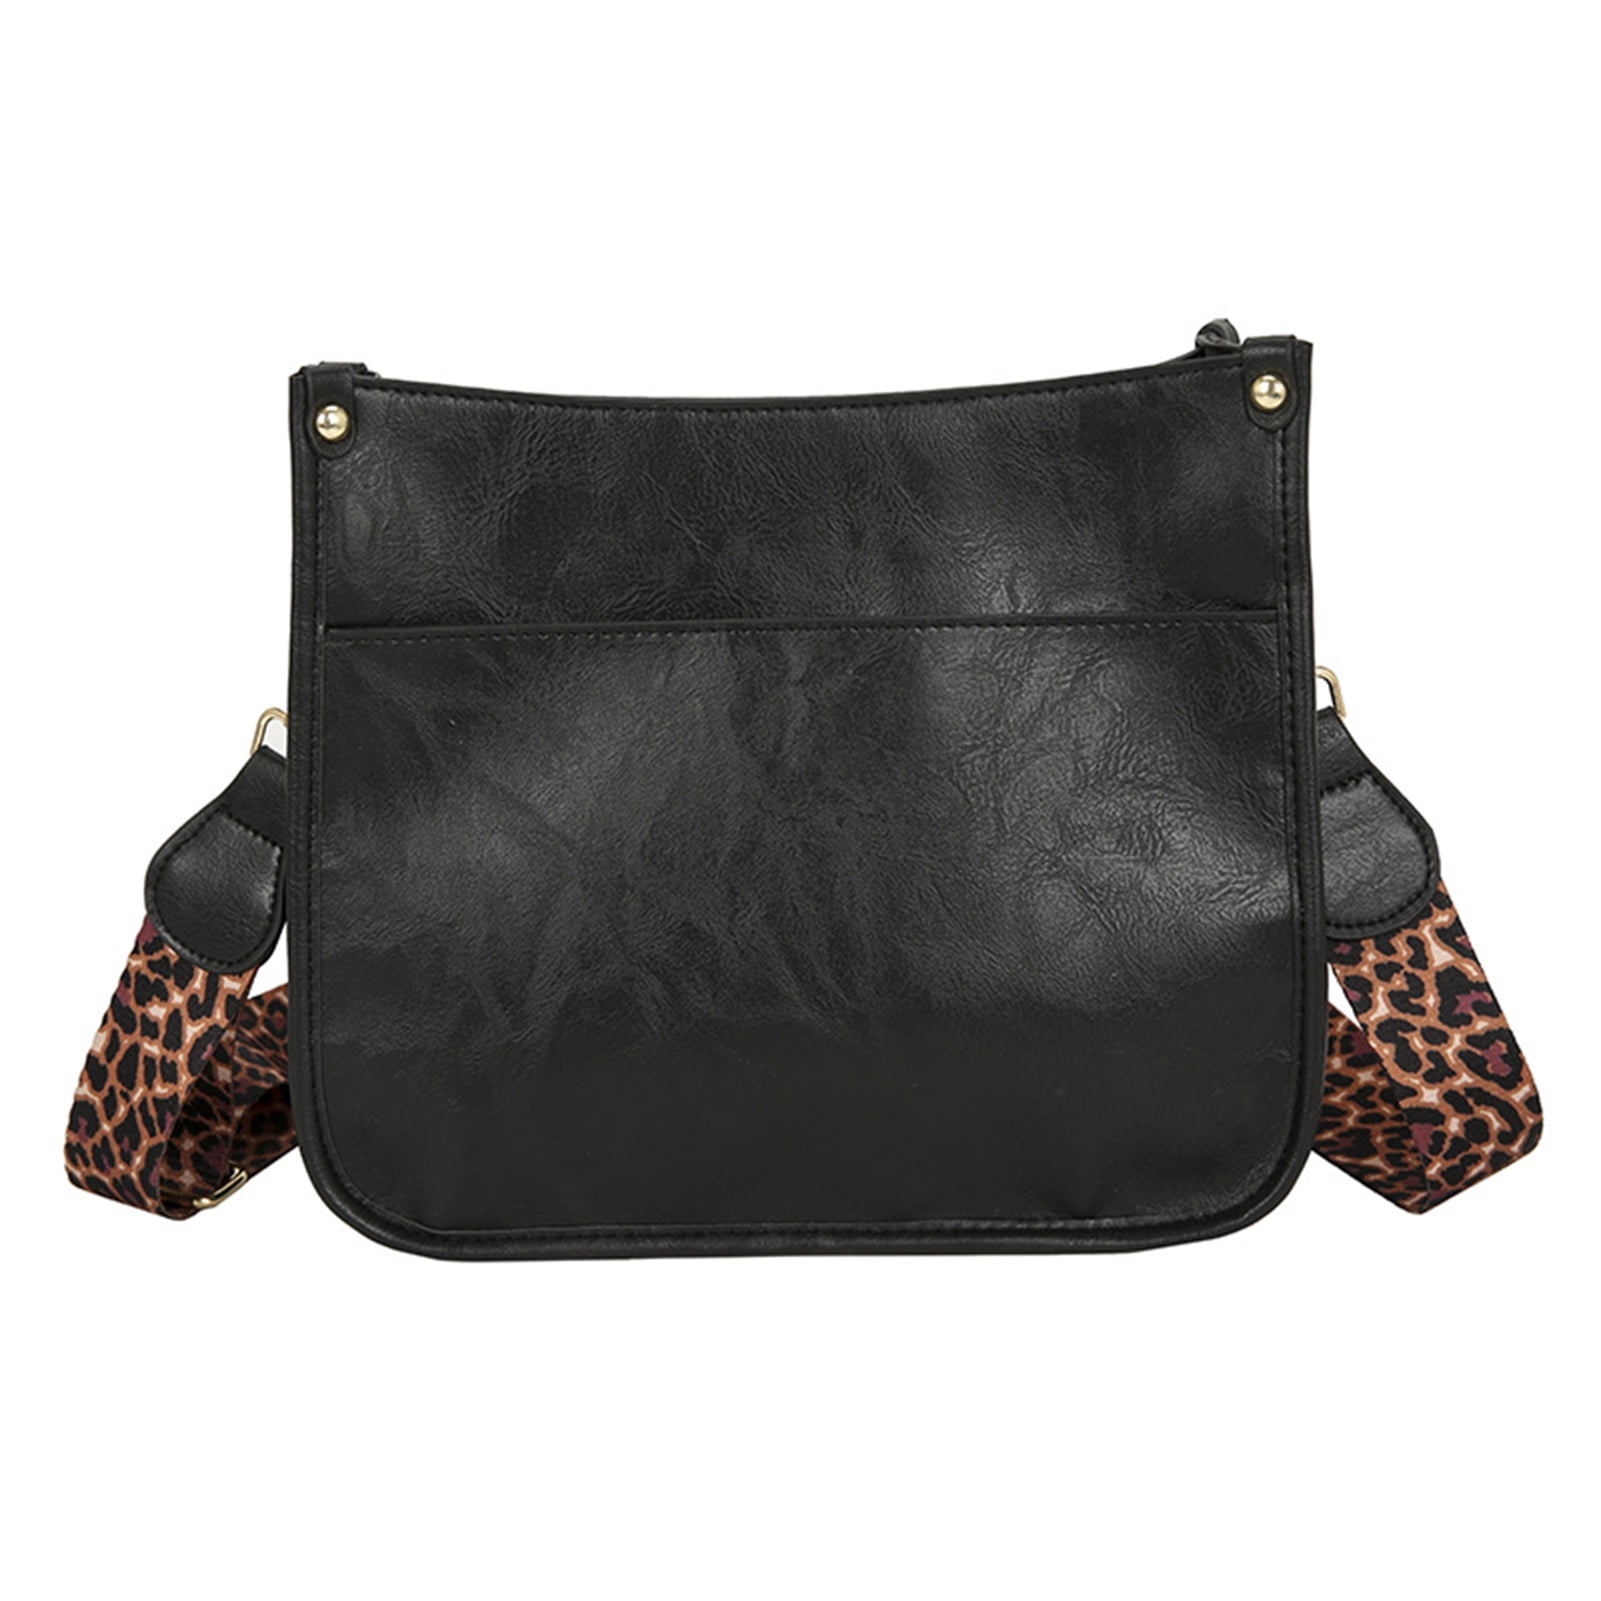 Handbag Bag Synthetic Leather Shoulder Purse Large Wide Shoulder Strap  Crossbody | eBay